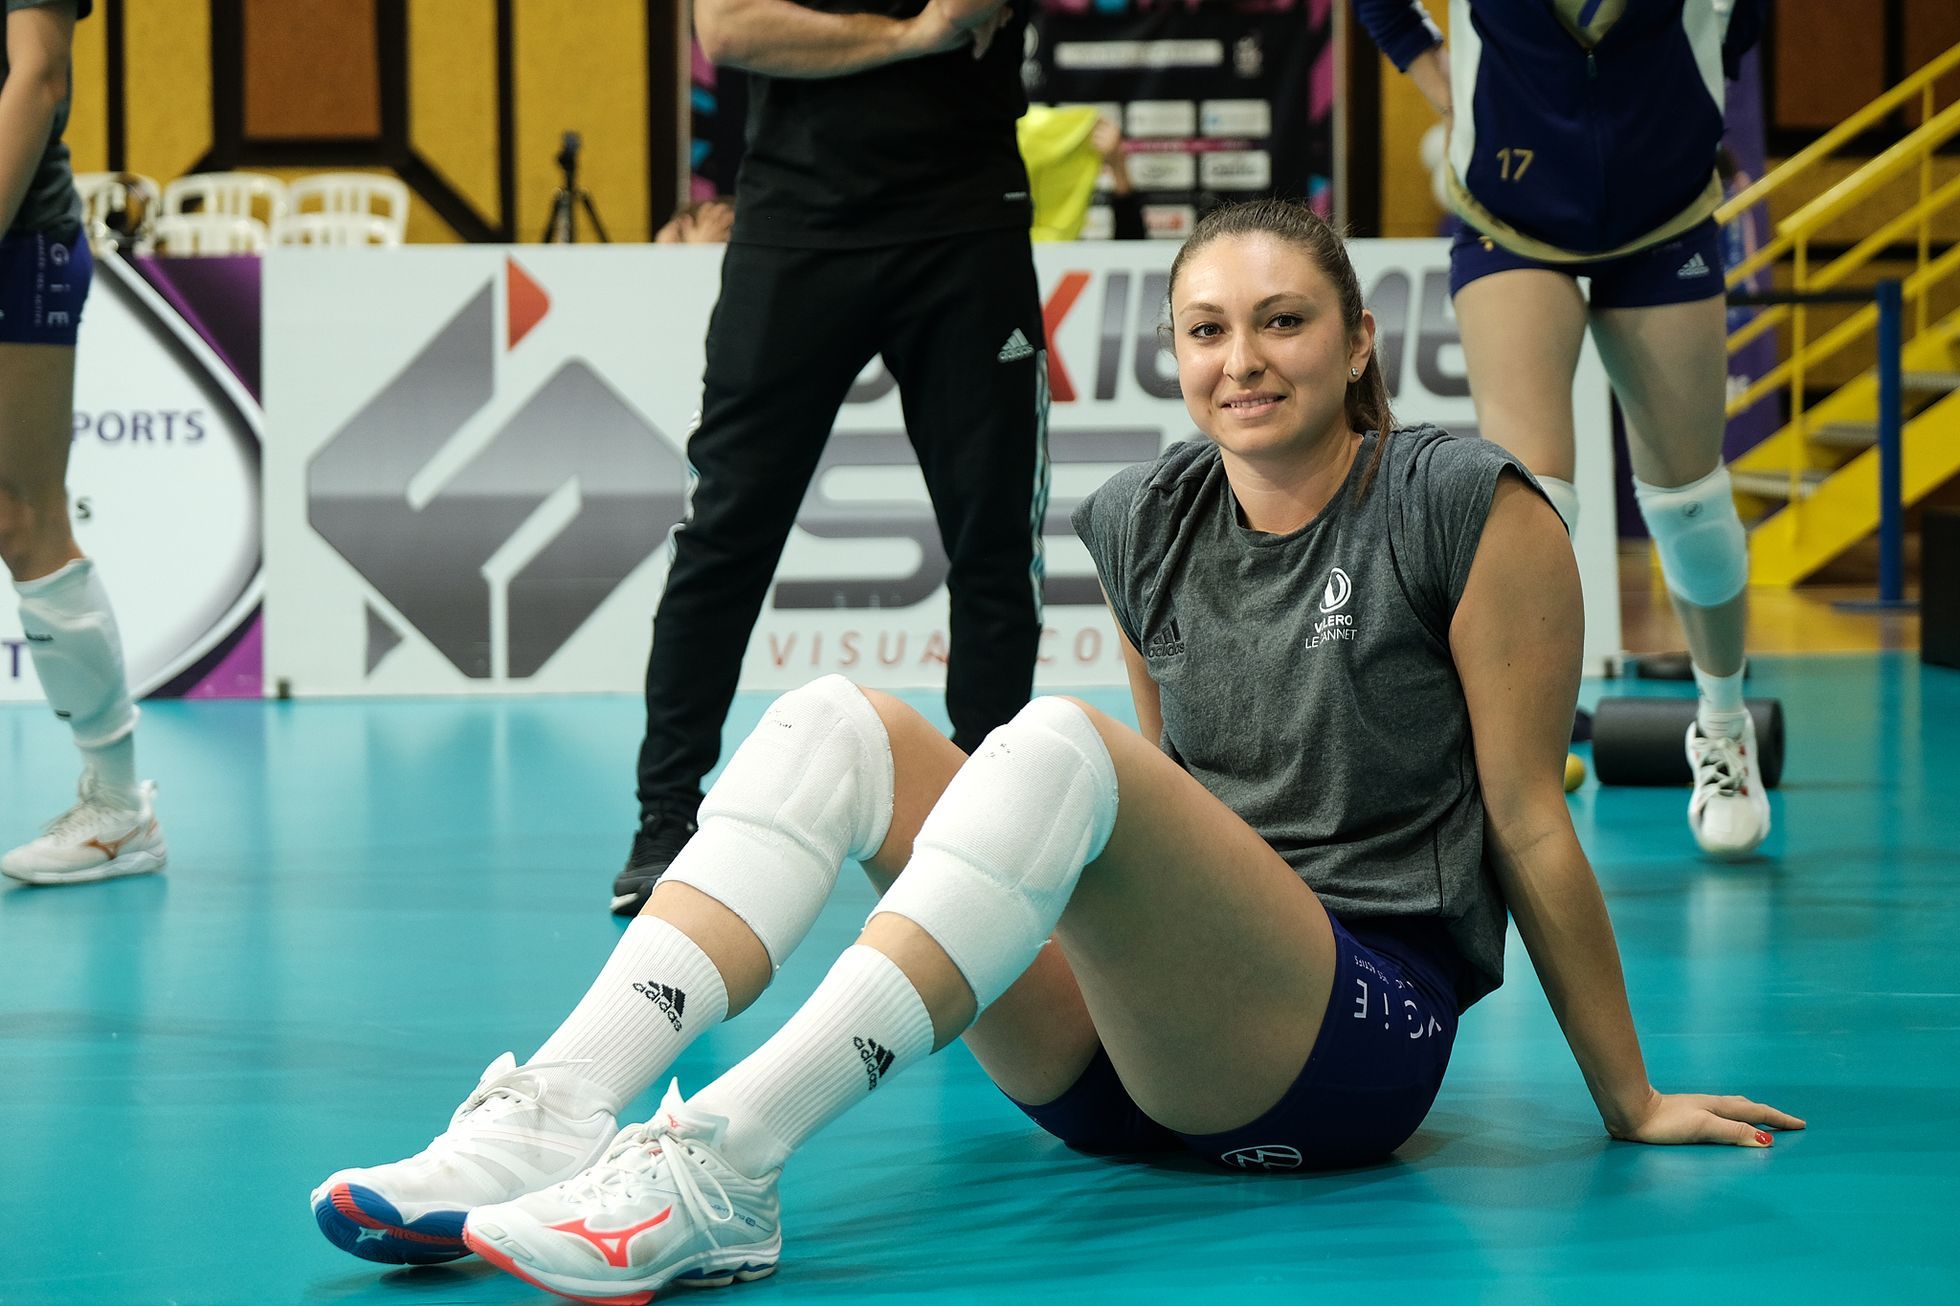 Après la victoire en France, Mlejnková est allé en Turquie, rêvant d’Italie et des Jeux Olympiques